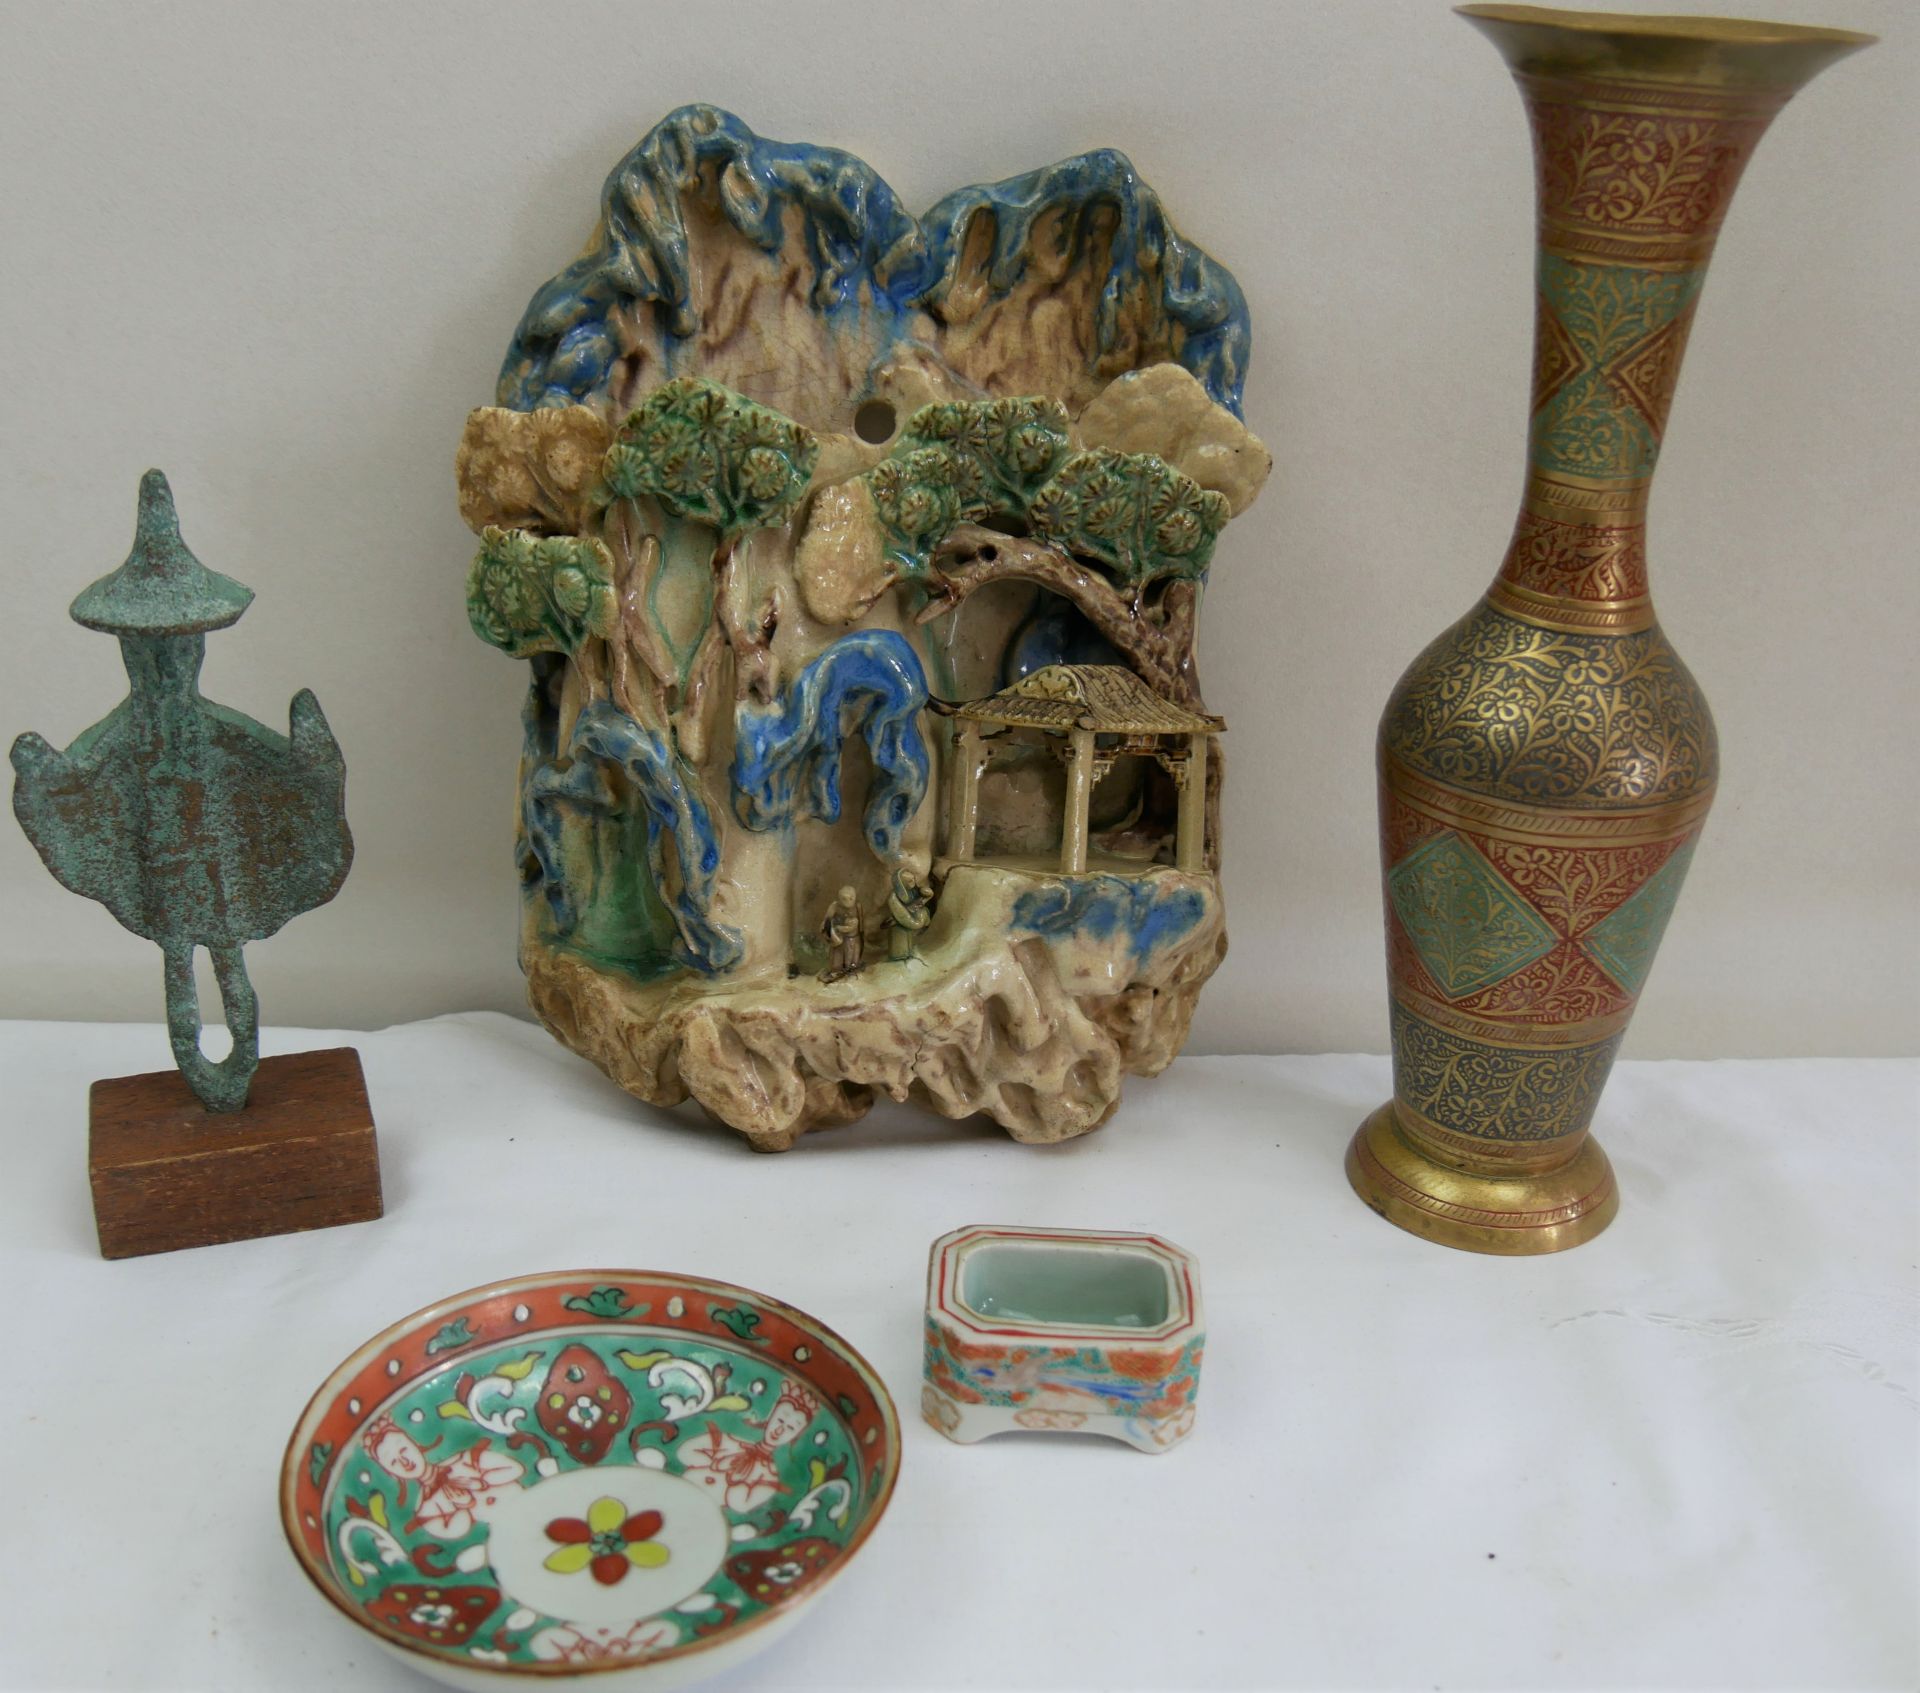 Lot aus Auflösung, dabei Bronzefigur Asiatika, Vase, etc. Bitte besichtigen! - Image 2 of 2